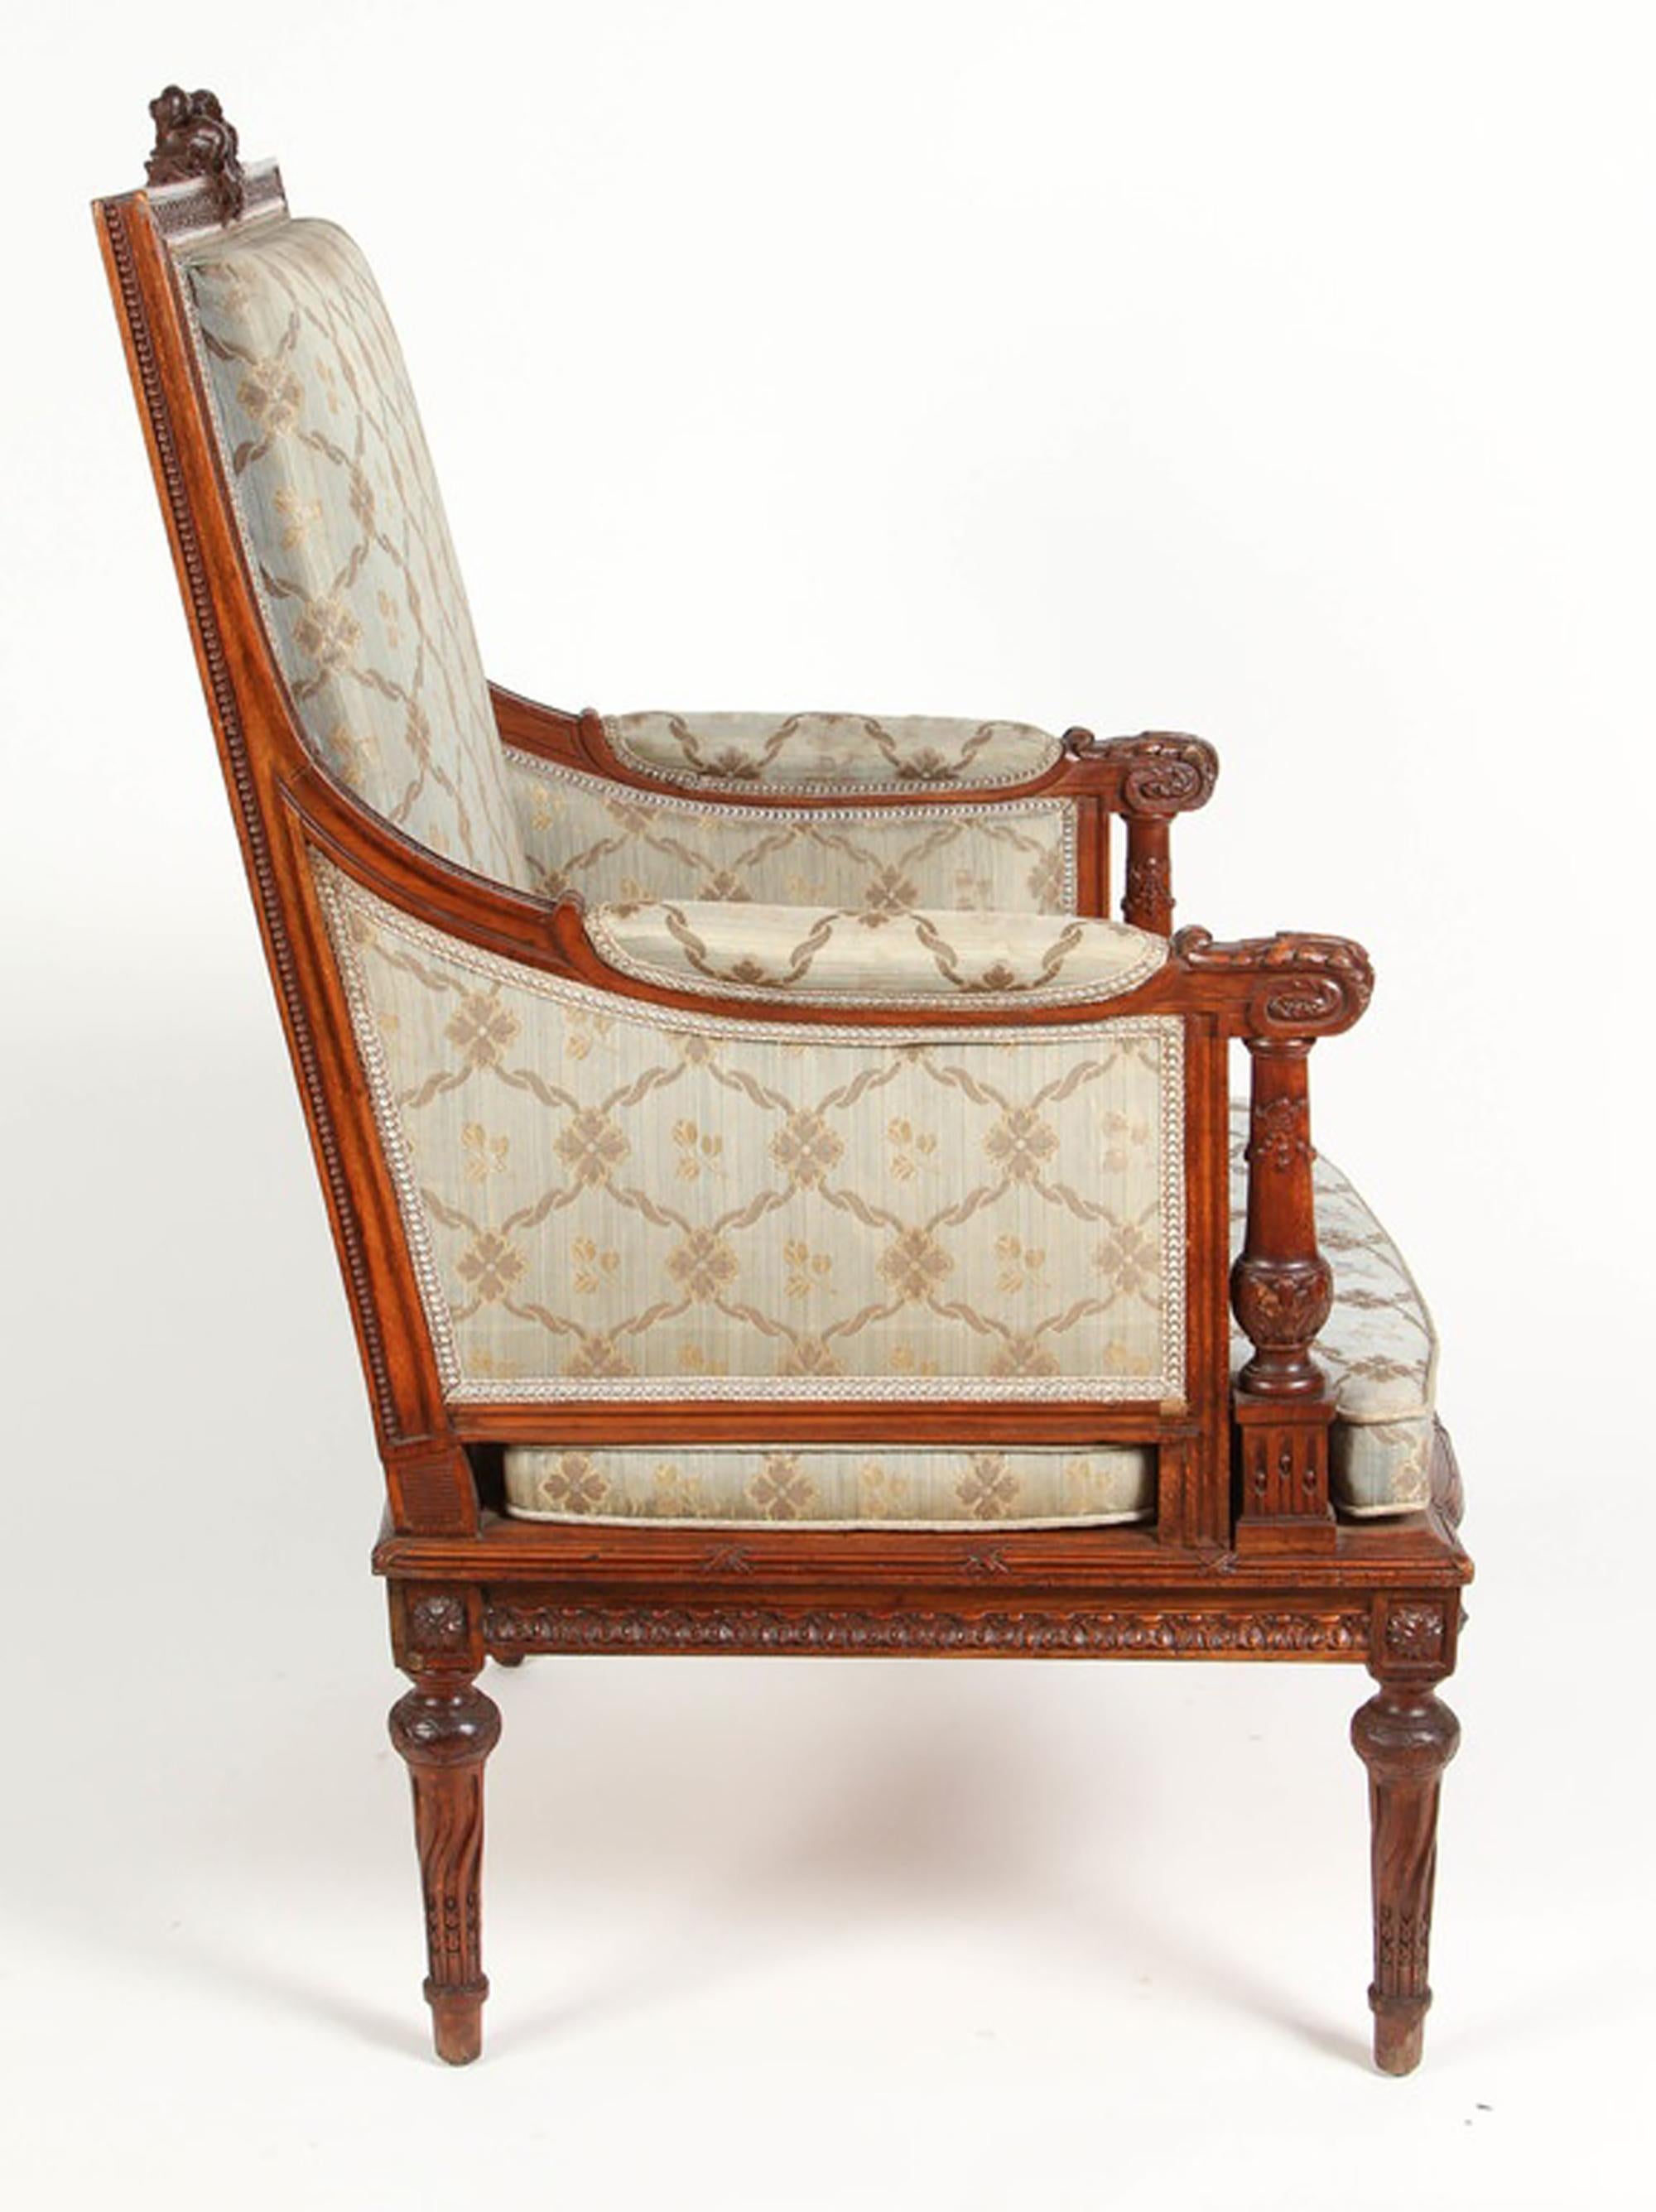 Ein kunstvoll geschnitzter Louis-XVI-Armlehnstuhl aus Nussbaum von 1860 aus Frankreich. Der Stuhl hat seine Originalpolsterung, die ein Muster aus großen und kleinen ineinandergreifenden Rauten aufweist. Die Schnitzereien sind in ausgezeichnetem